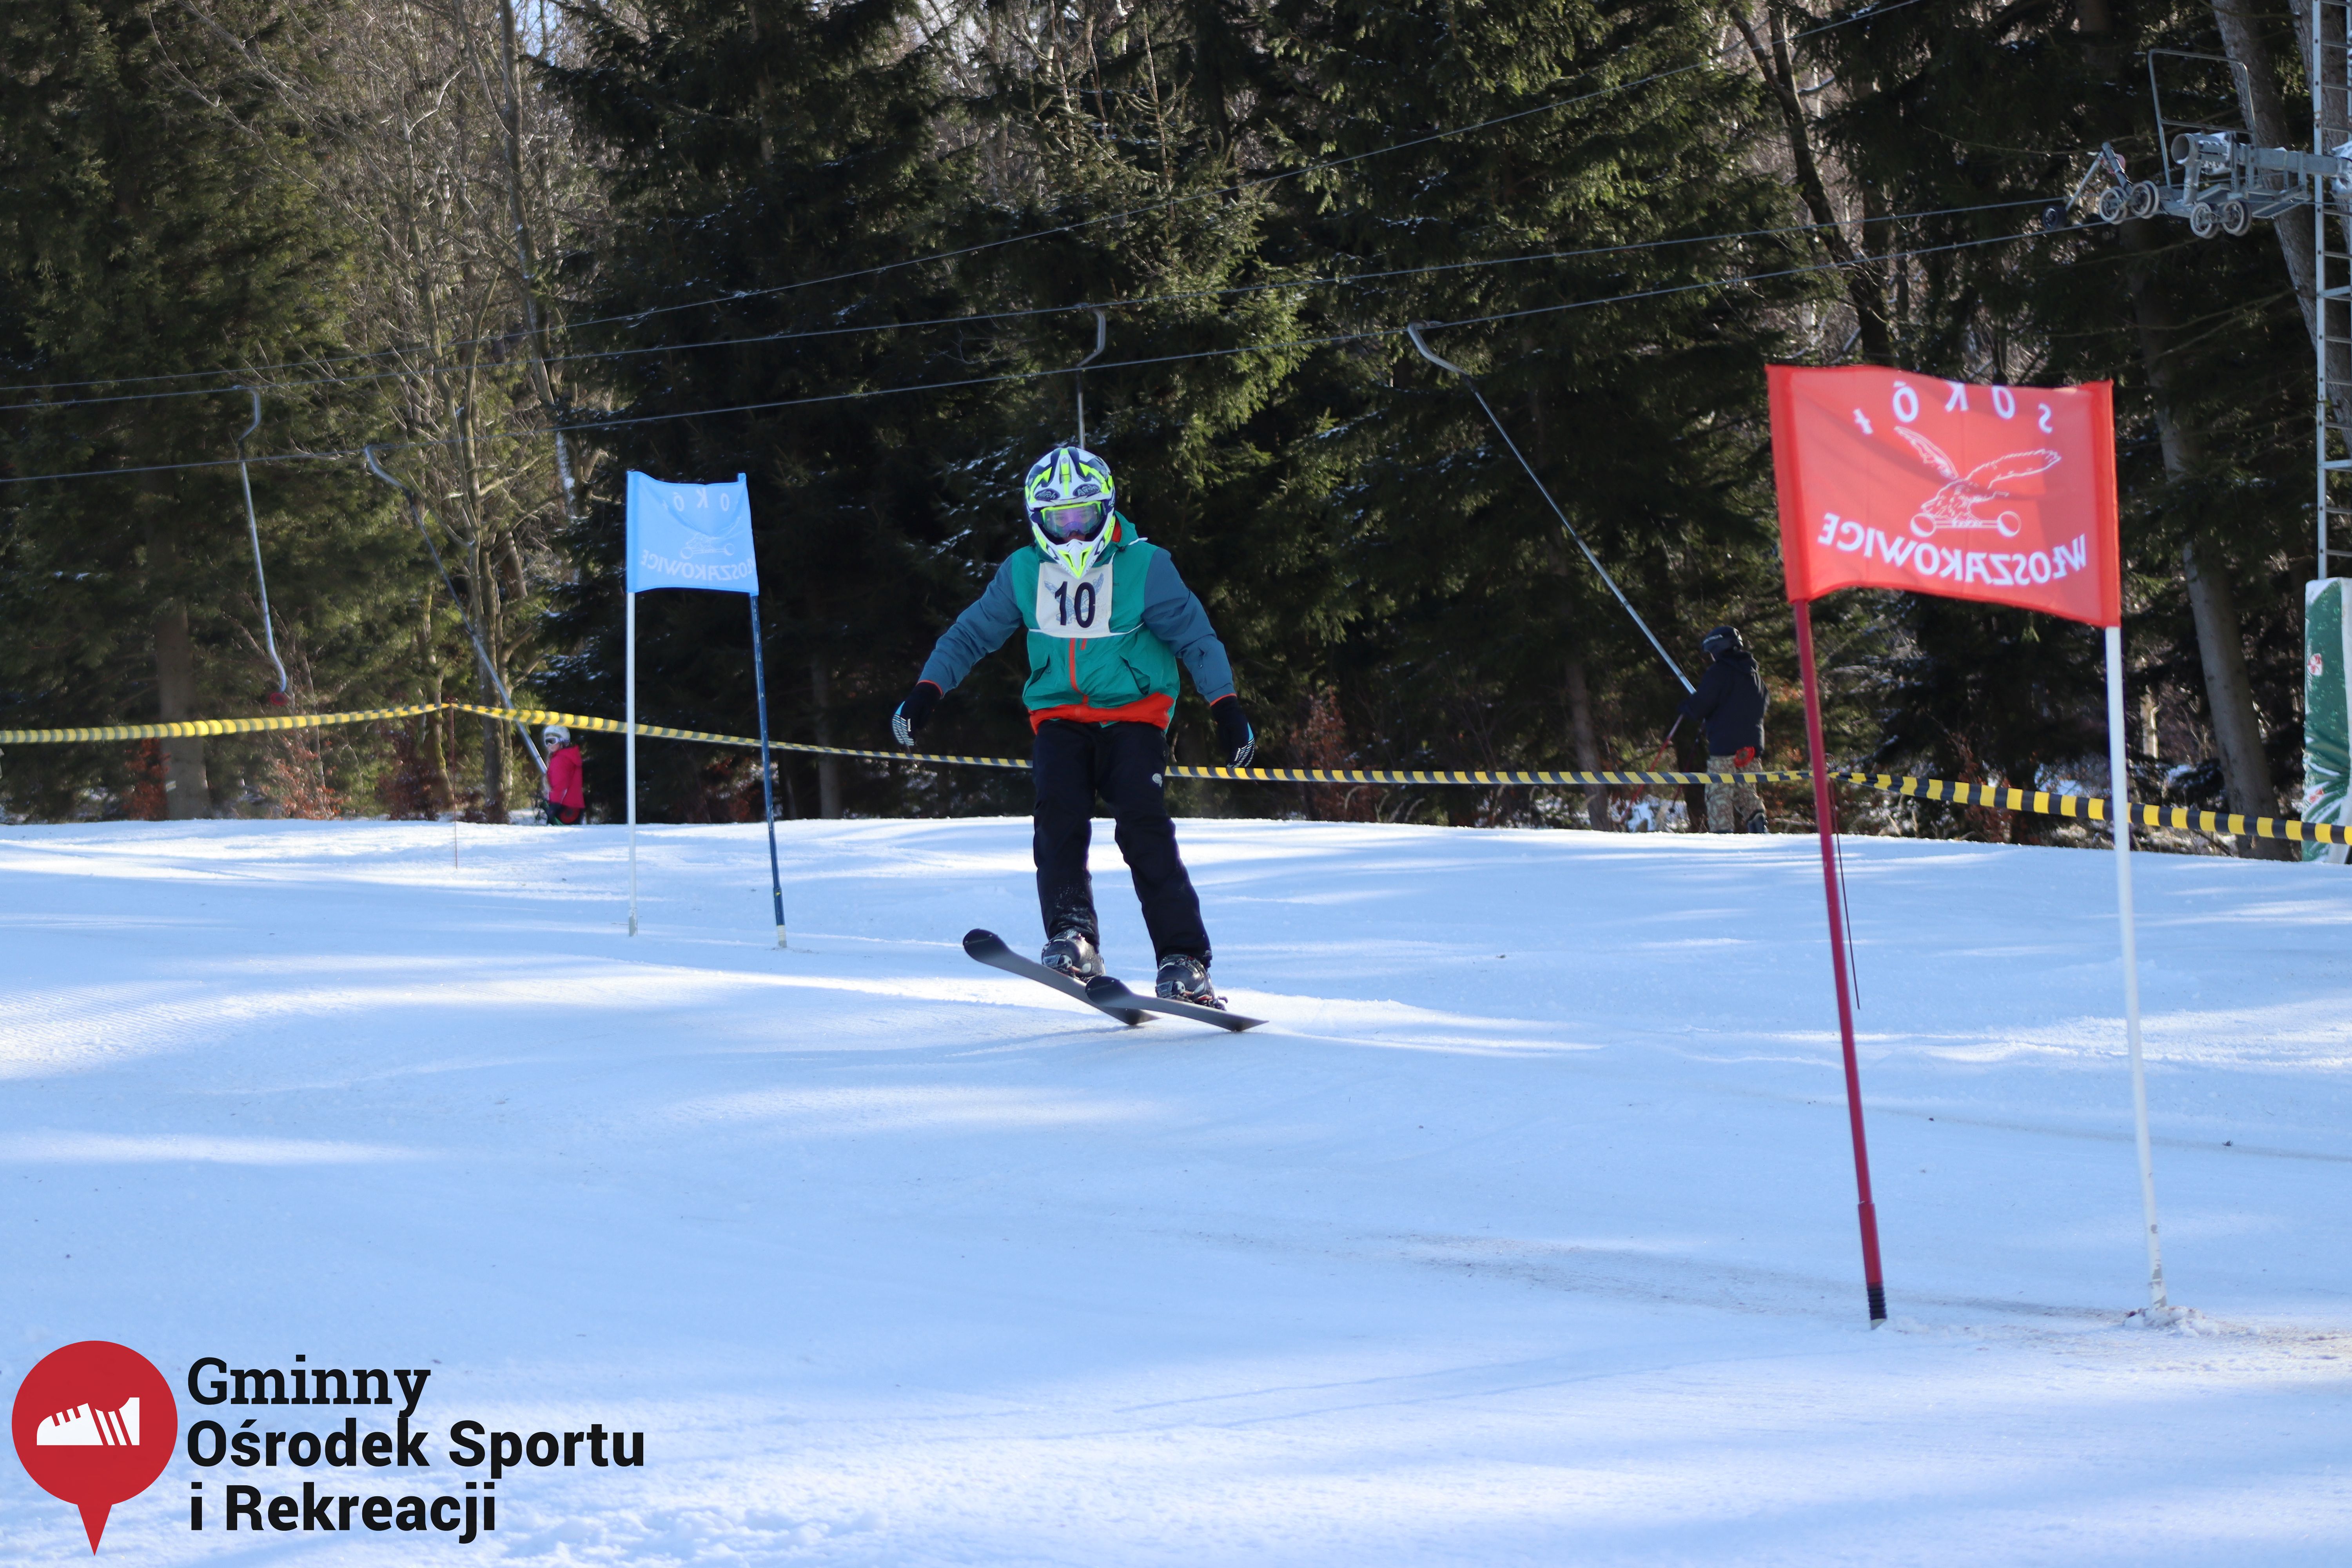 2022.02.12 - 18. Mistrzostwa Gminy Woszakowice w narciarstwie050.jpg - 2,15 MB